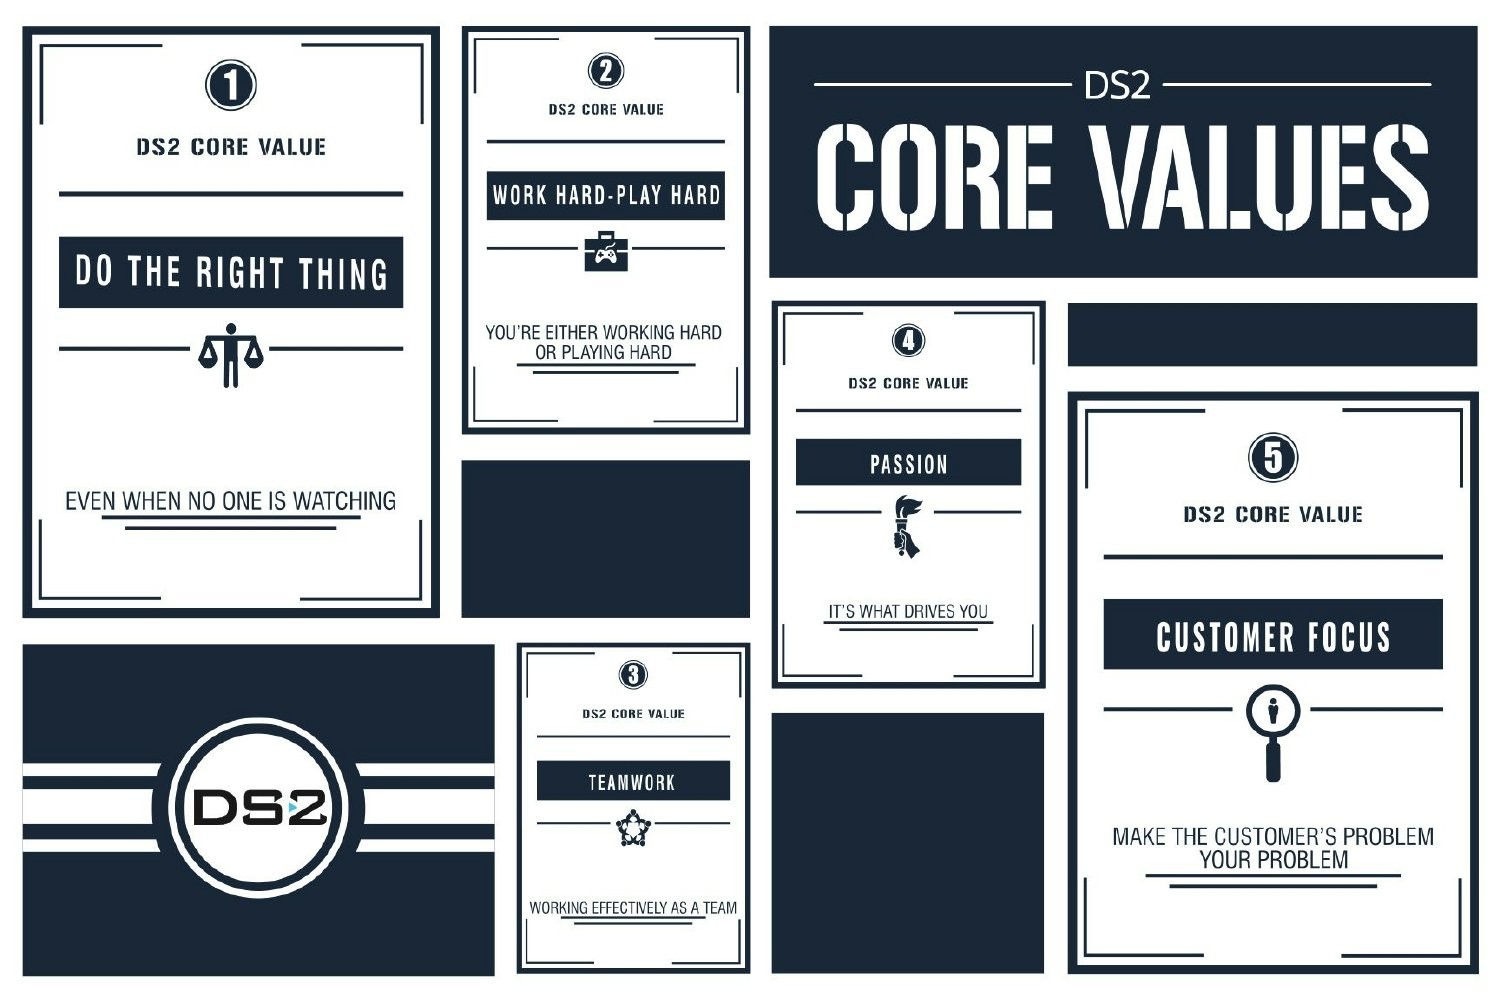 DS2 Core Values!